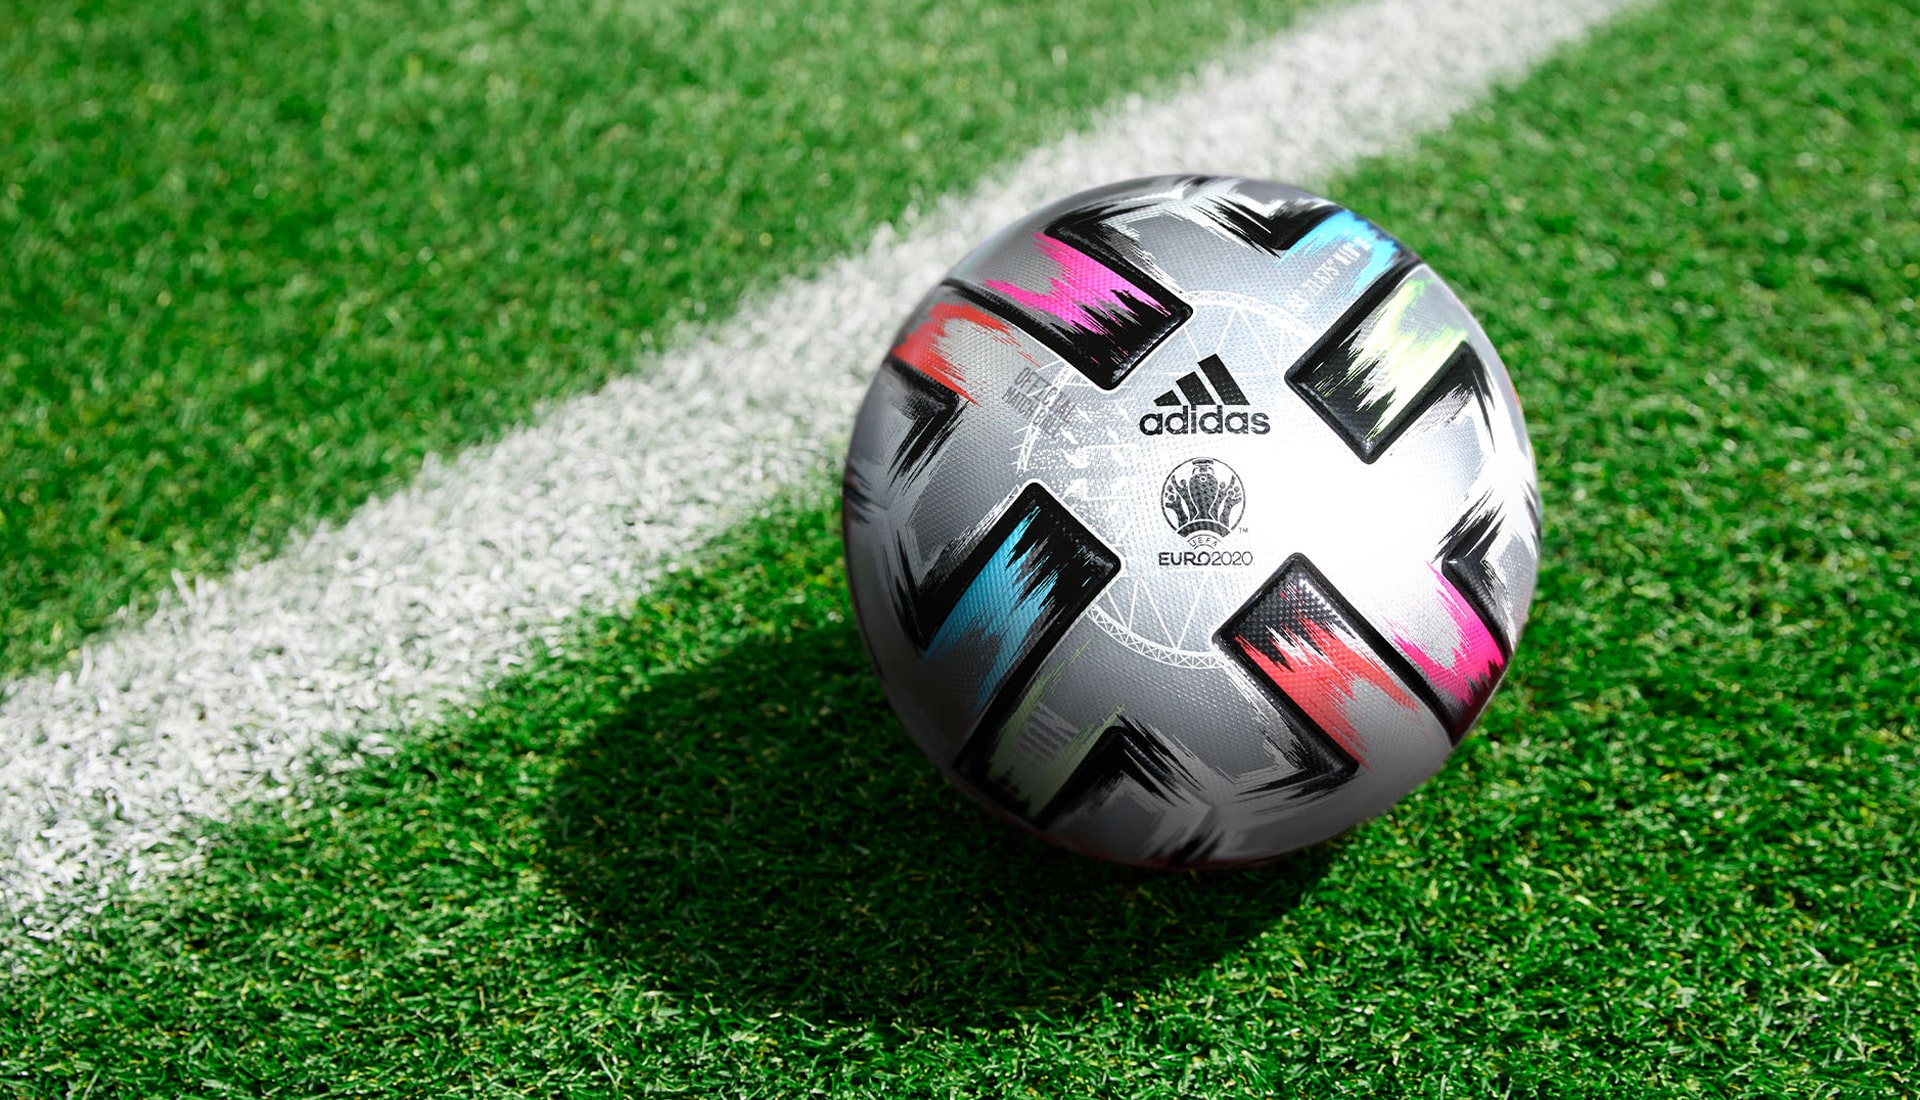 М'яч фінального матчу чемпіонату Європи по футболу 2020 Uniforia  від adidas - фото 1